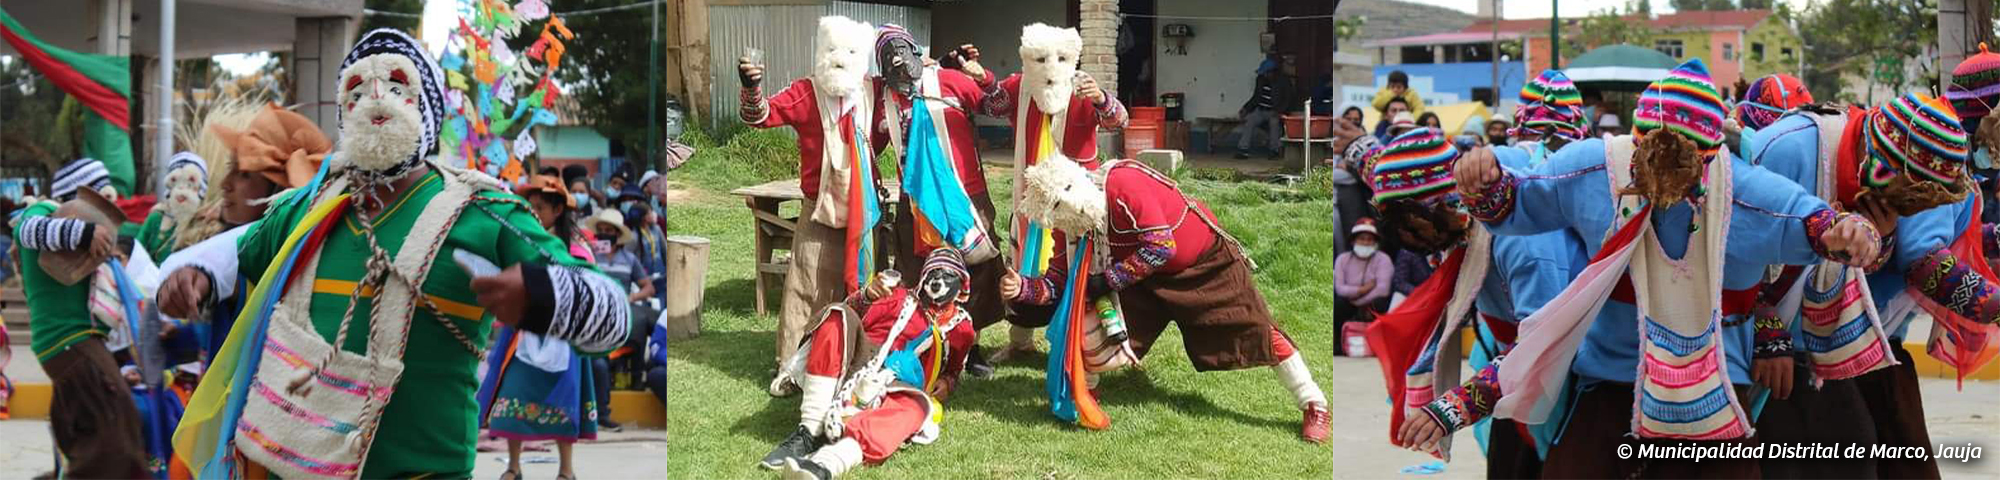 Danza de la Huayligía o Huaylegía es declarada Patrimonio Cultural de la Nación